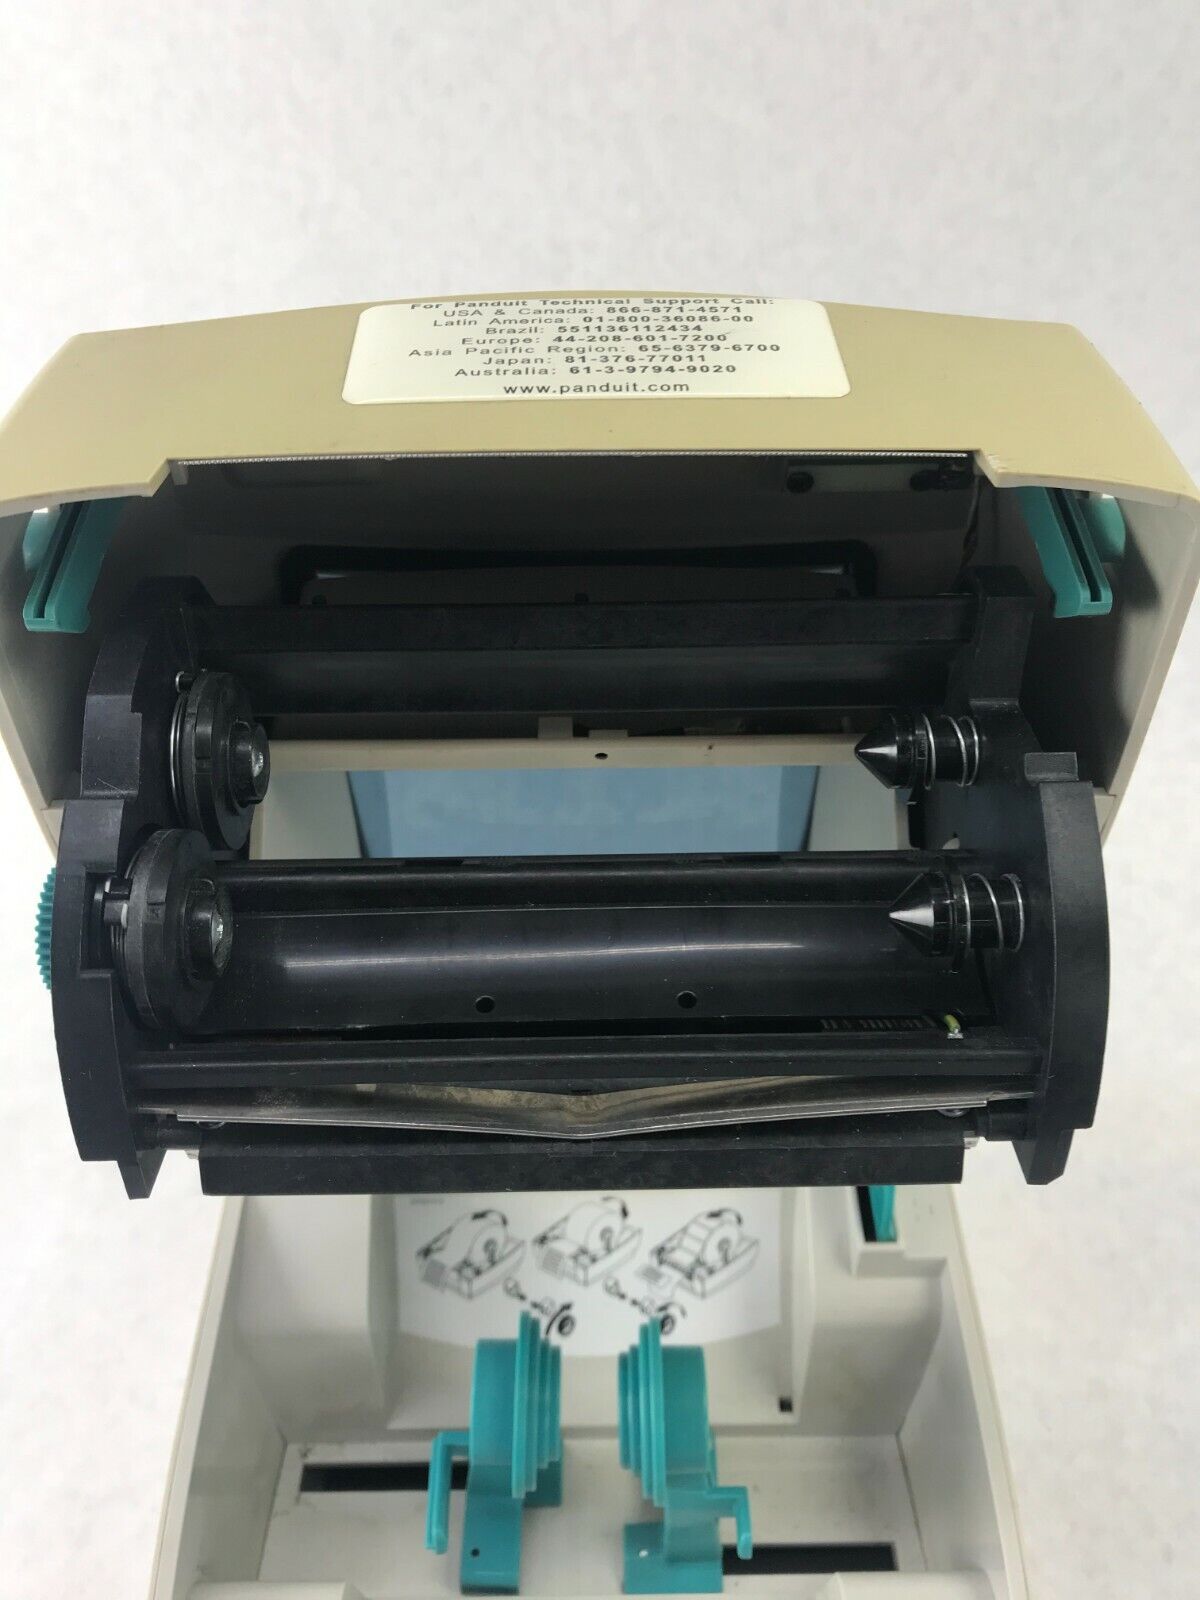 Panduit TDP43MY Thermal Transfer Label Printer - Tested